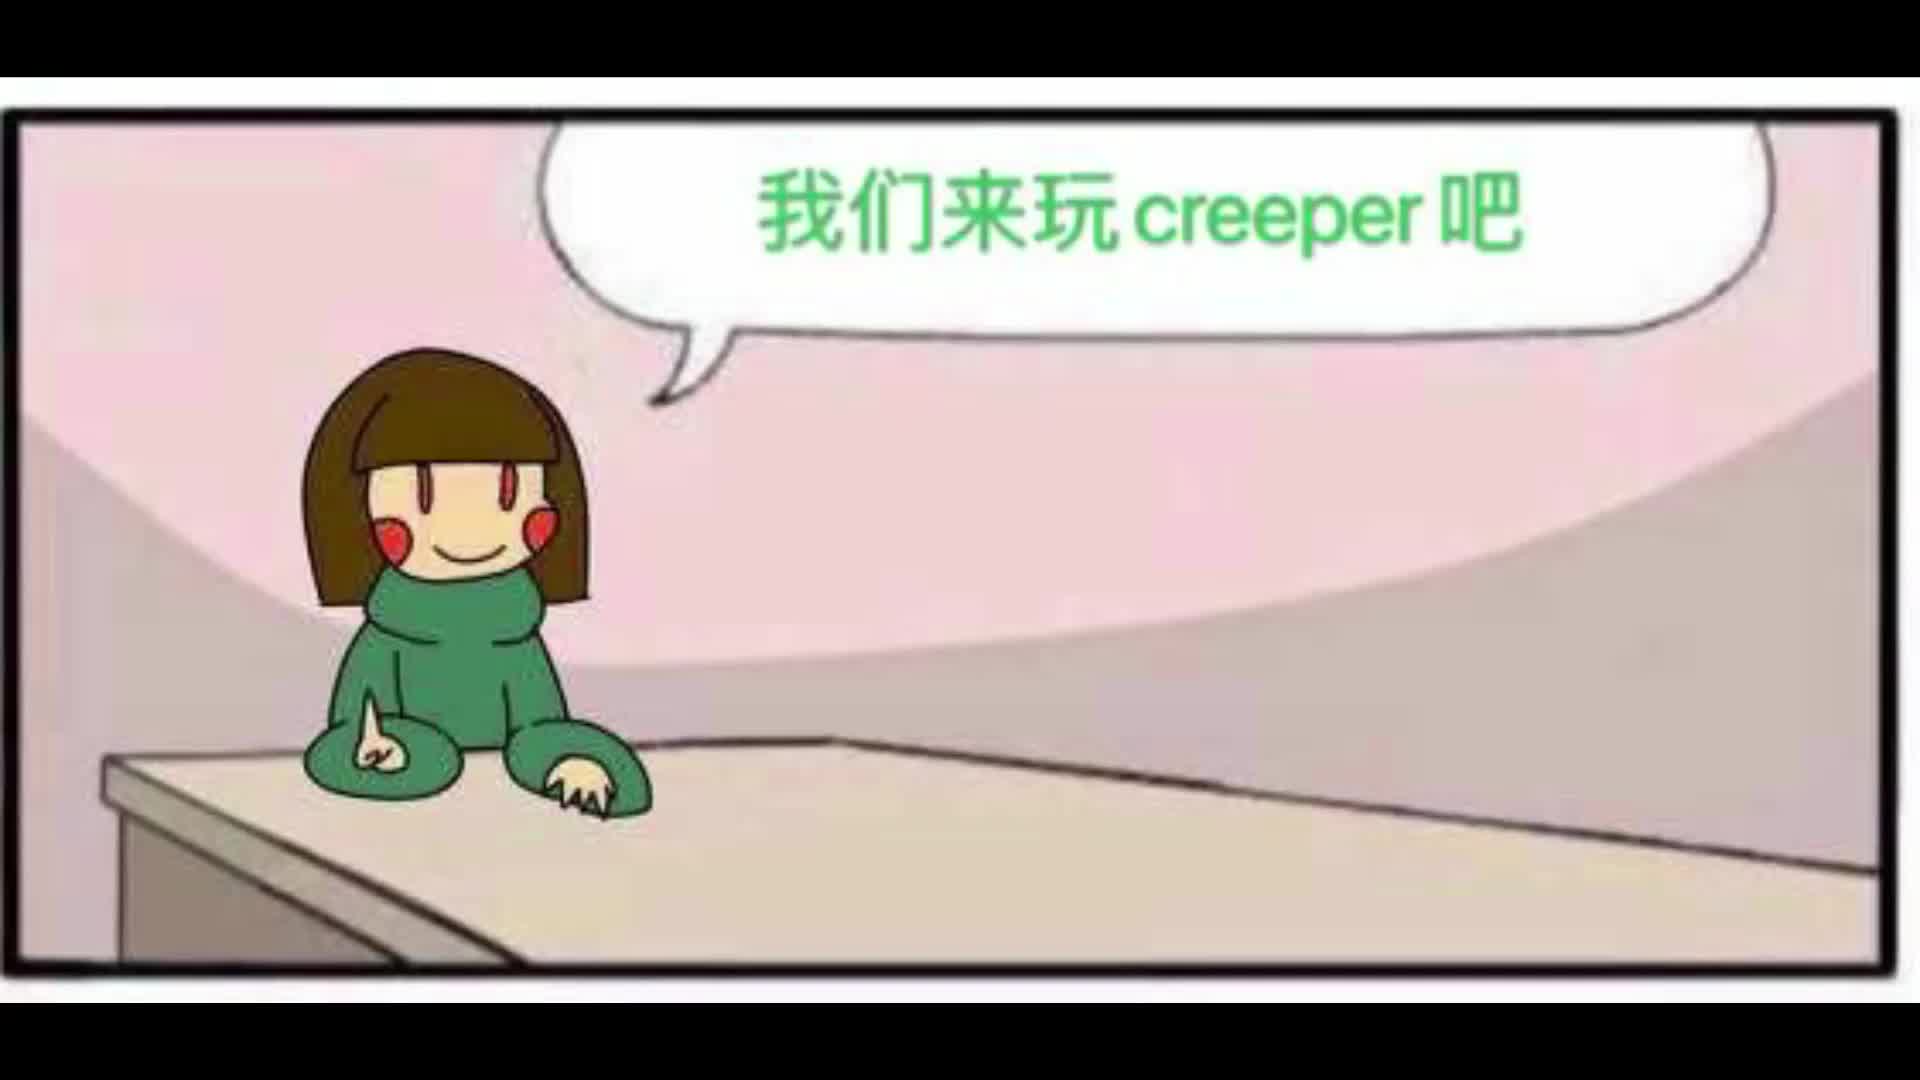 （互动视频）当UT人物开始玩creeper